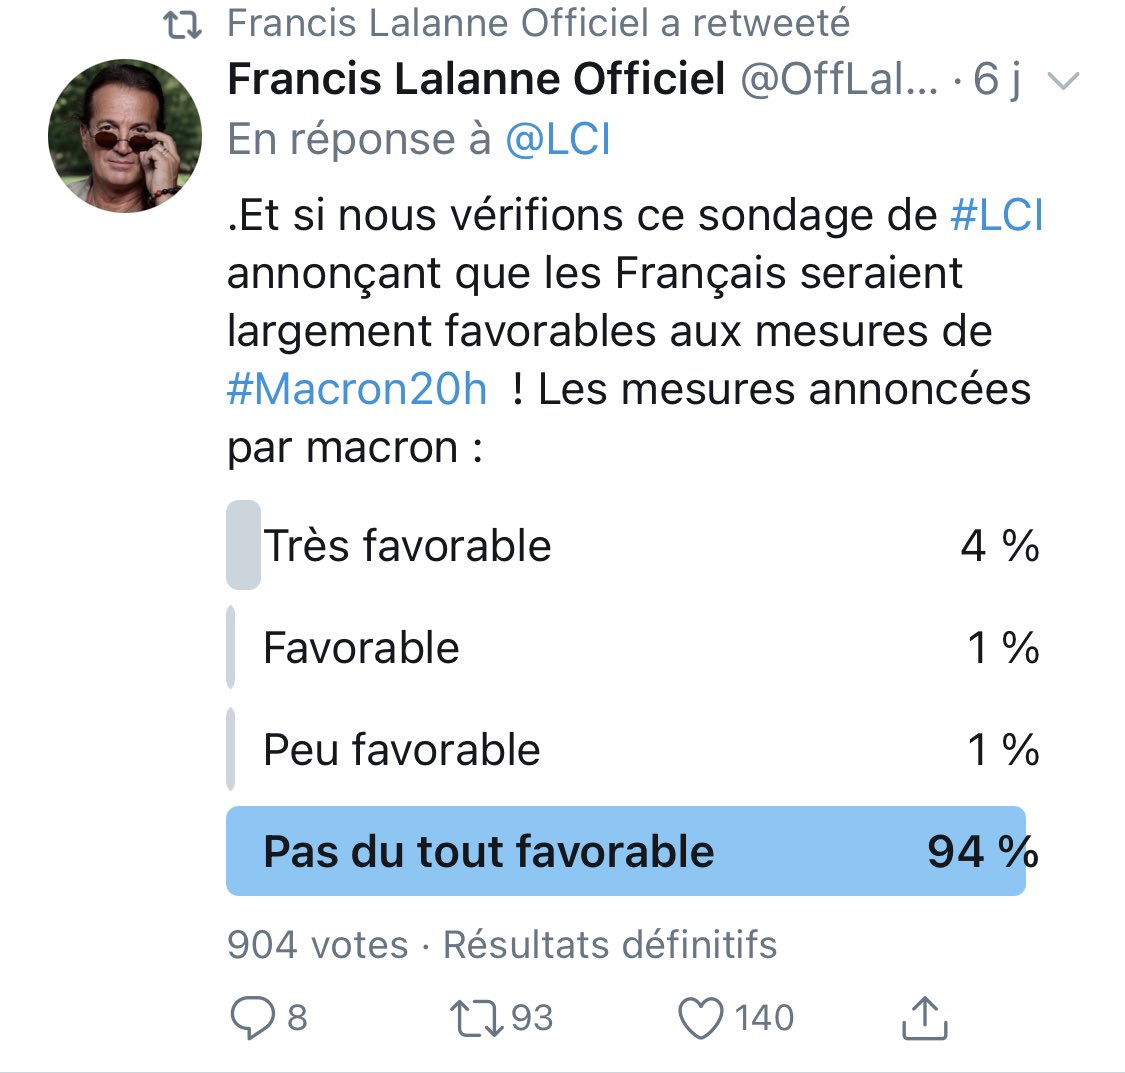 Francis Lalanne n’est pas complotiste, mais il croit pouvoir « vérifier » un sondage d’un institut spécialisé avec échantillon représentatif, en balançant un contre-sondage sur Twitter à ses groupies qui pensent tous la même chose que lui :